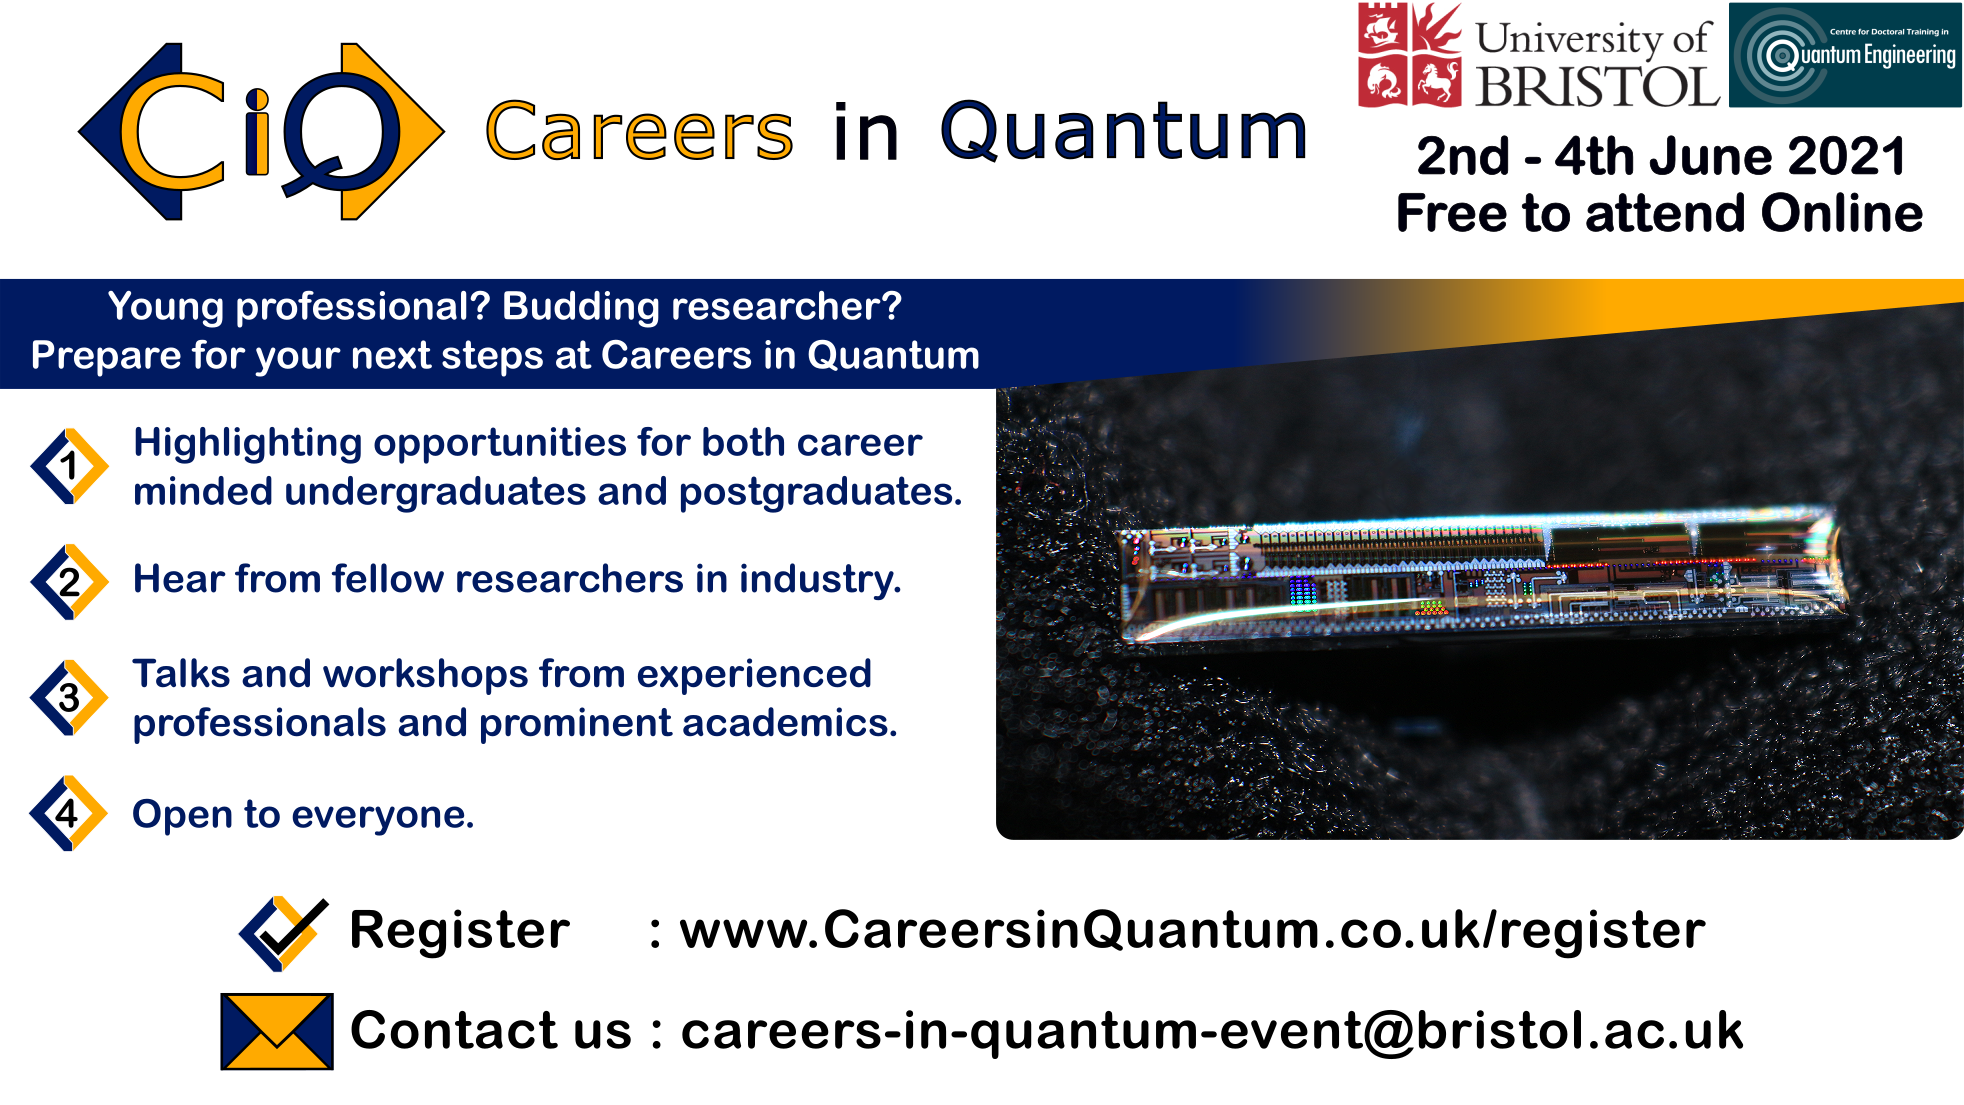 Careers in Quantum promotional leaflet